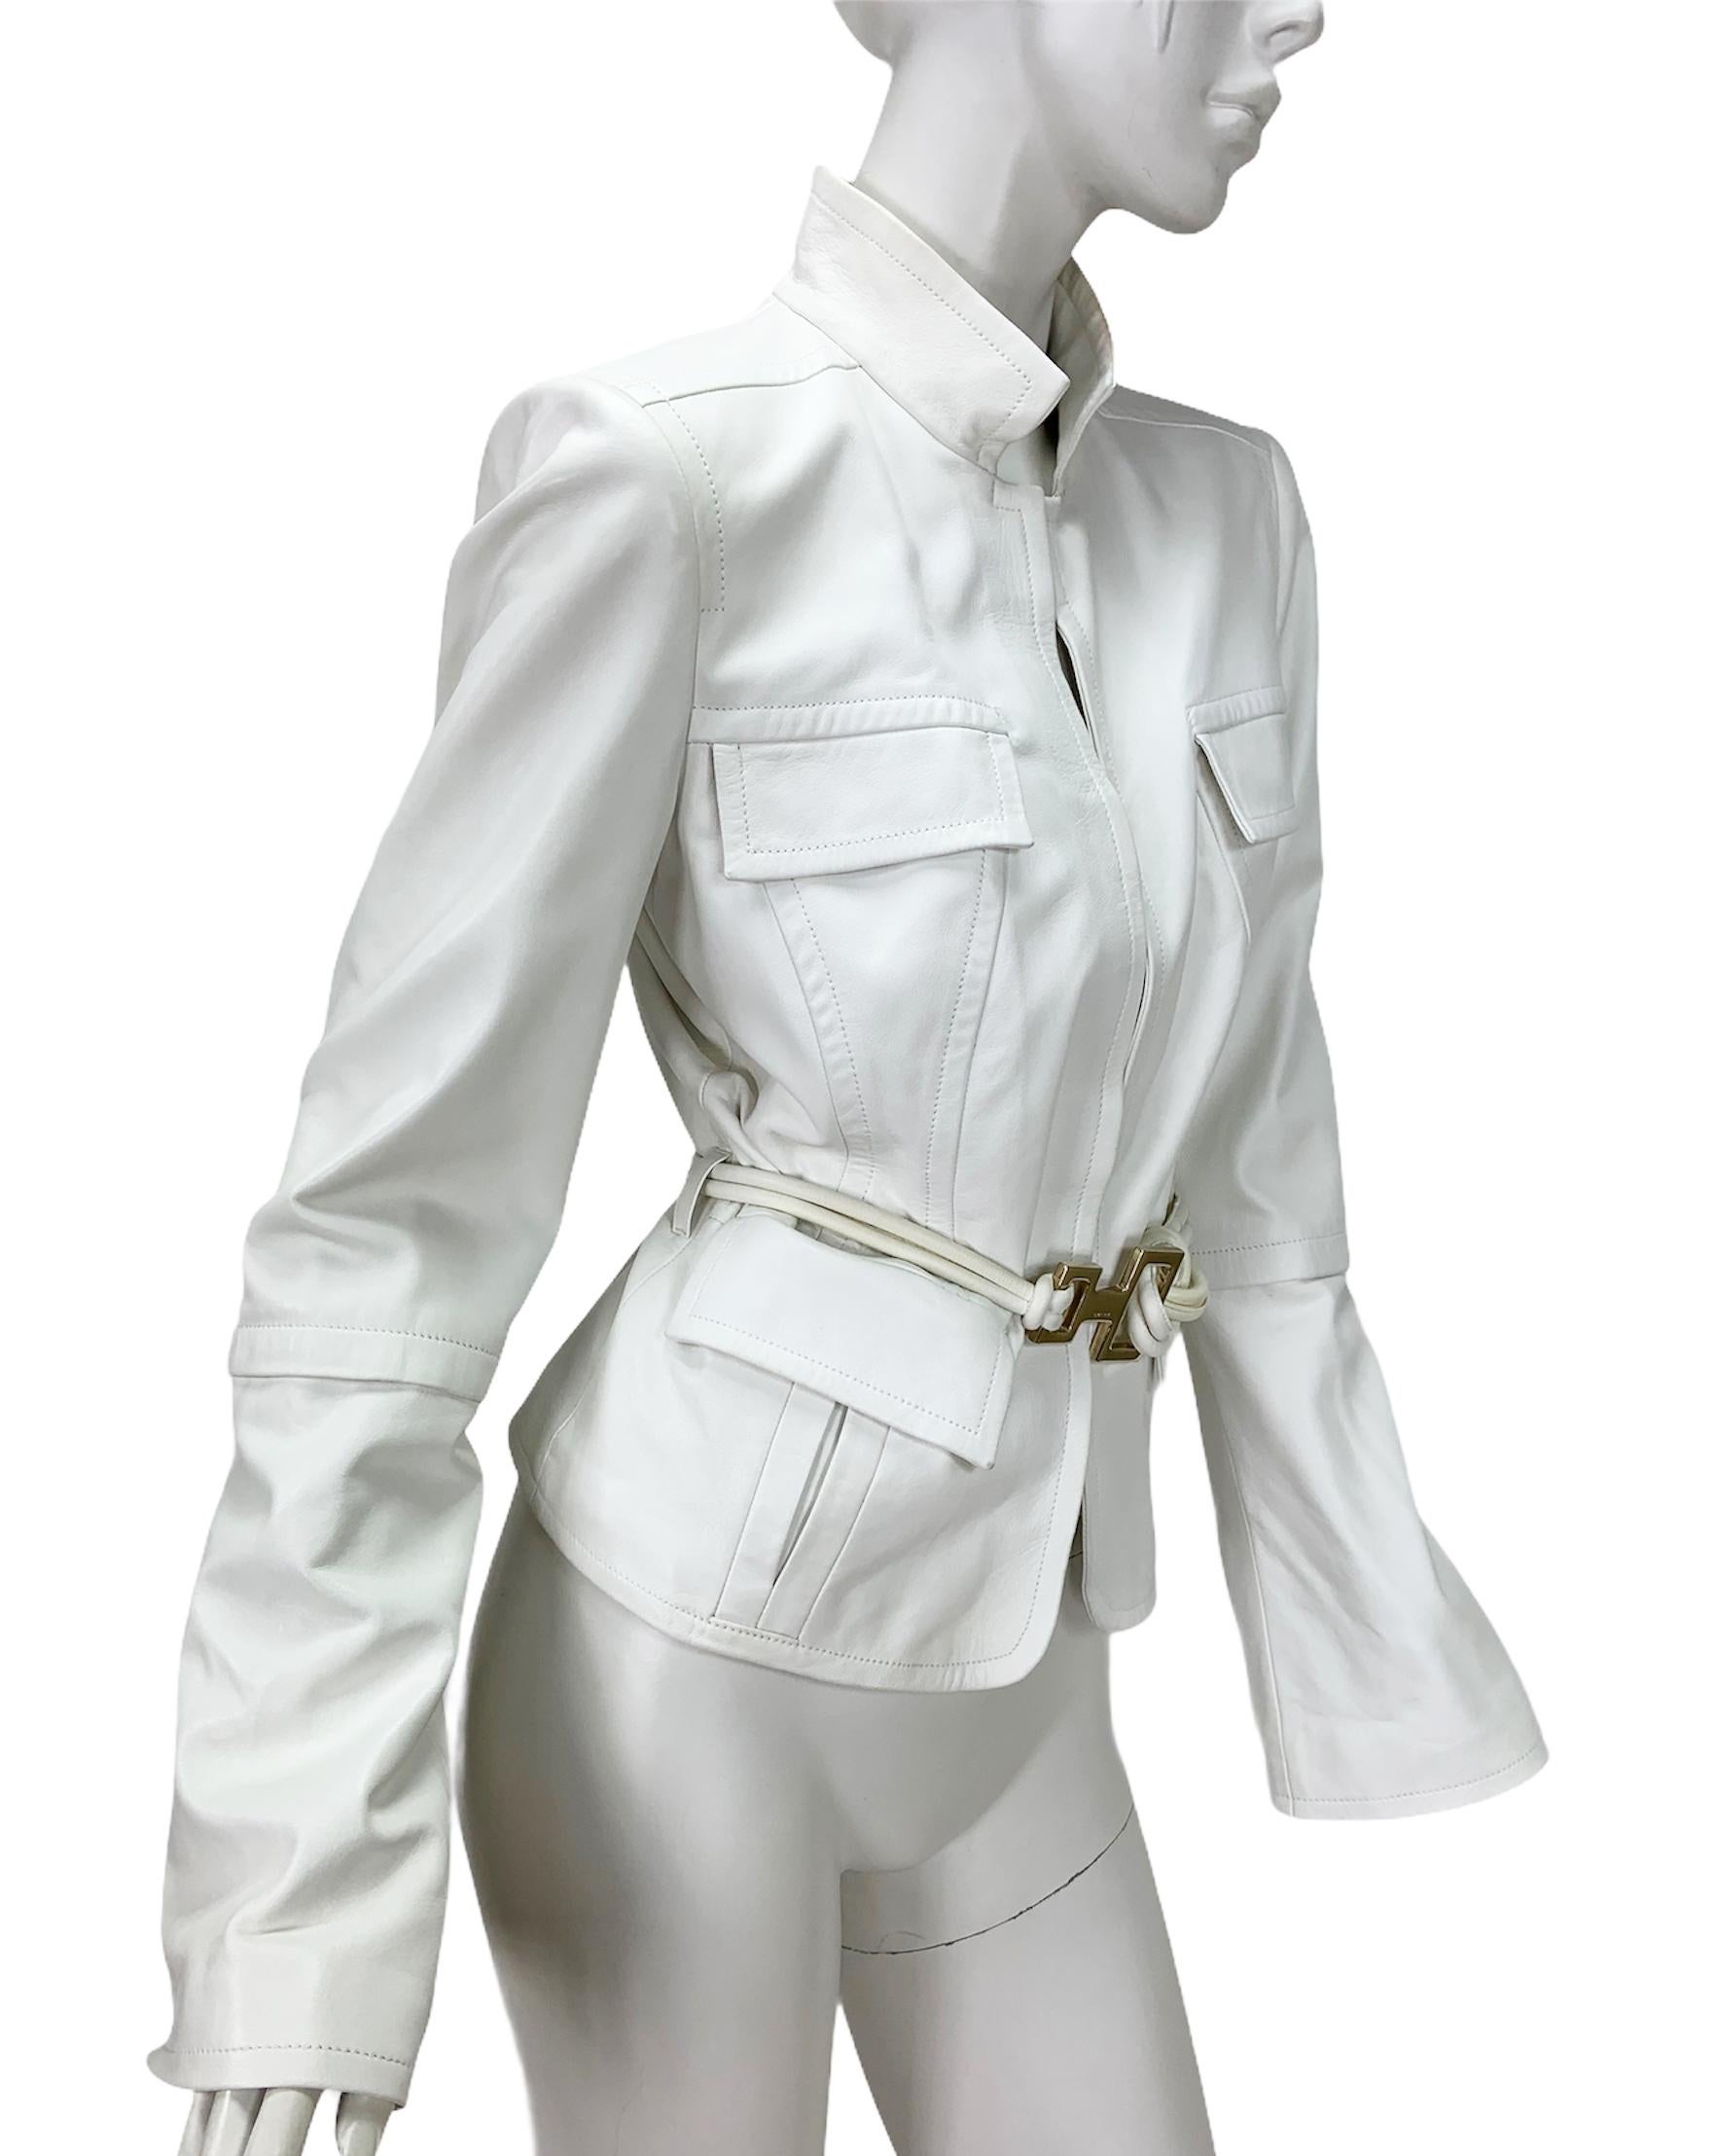 Vintage Tom Ford für Gucci Weißes Leder mit Gürtel und passender Jacke
F/W 2004 Collection'S
Designer Größe 46 - US 10 ( bitte überprüfen Sie die Maße, um unnötige Rücksendungen zu vermeiden )
Echtes Leder, Hakenverschluss, zwei Vordertaschen, zwei